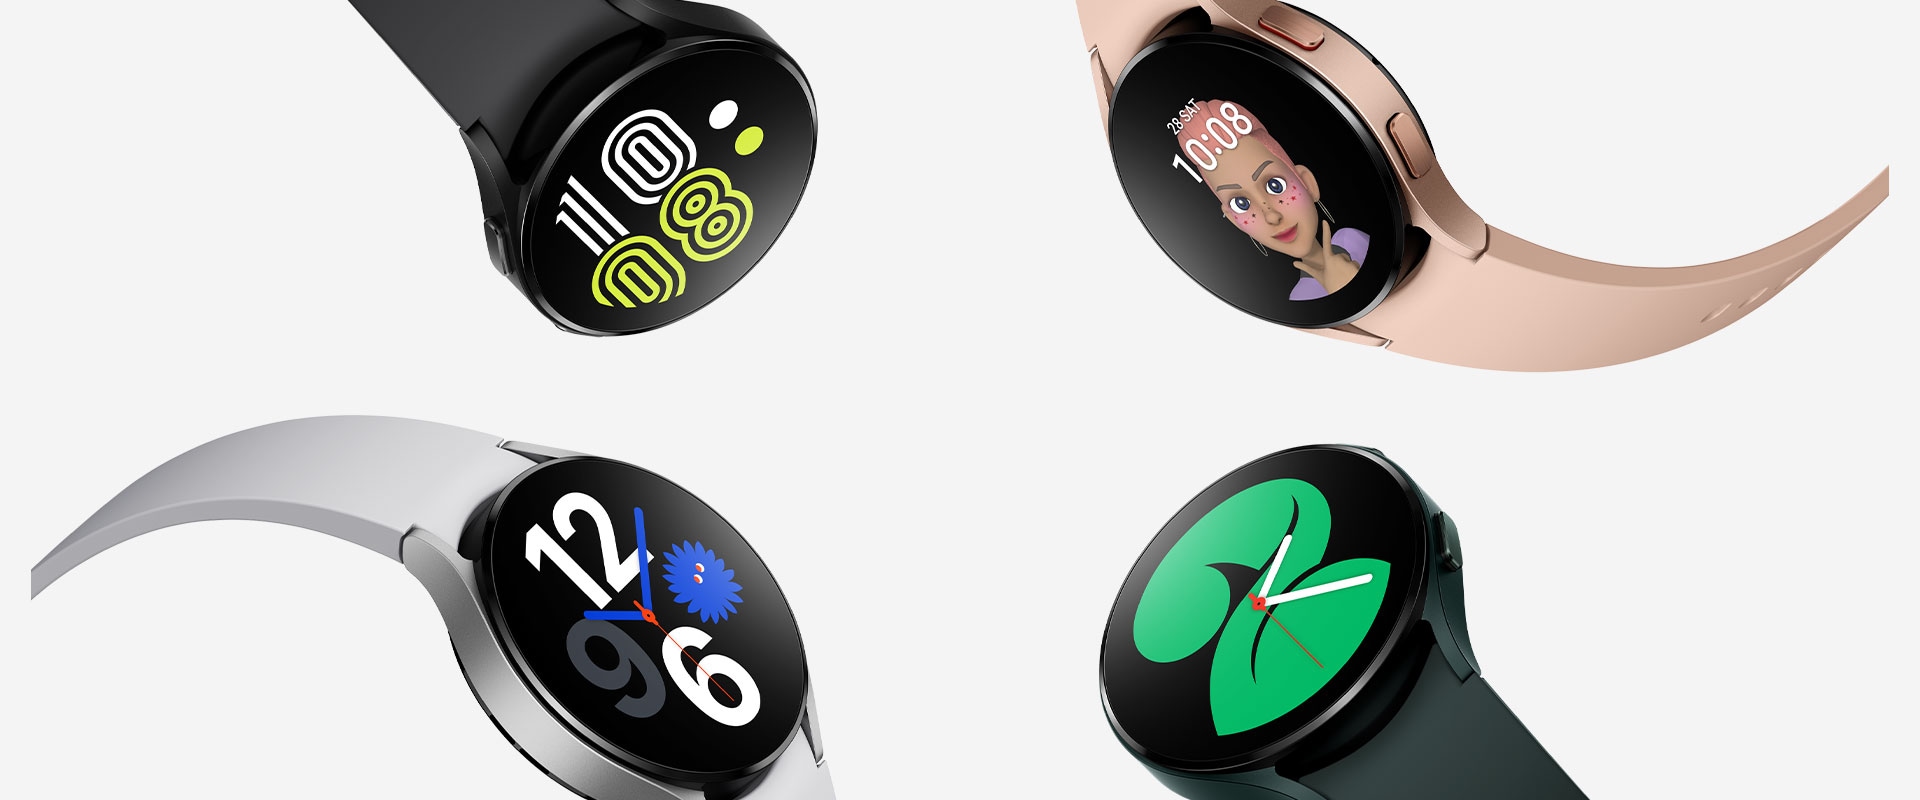 Quatre Galaxy Watch4 sont regroupées, chaque montre présentant de manière visible différents styles de cadrans pour indiquer l’heure. Chaque montre est de couleur différente, allant du noir, de l’or rose et du vert à l’argent.